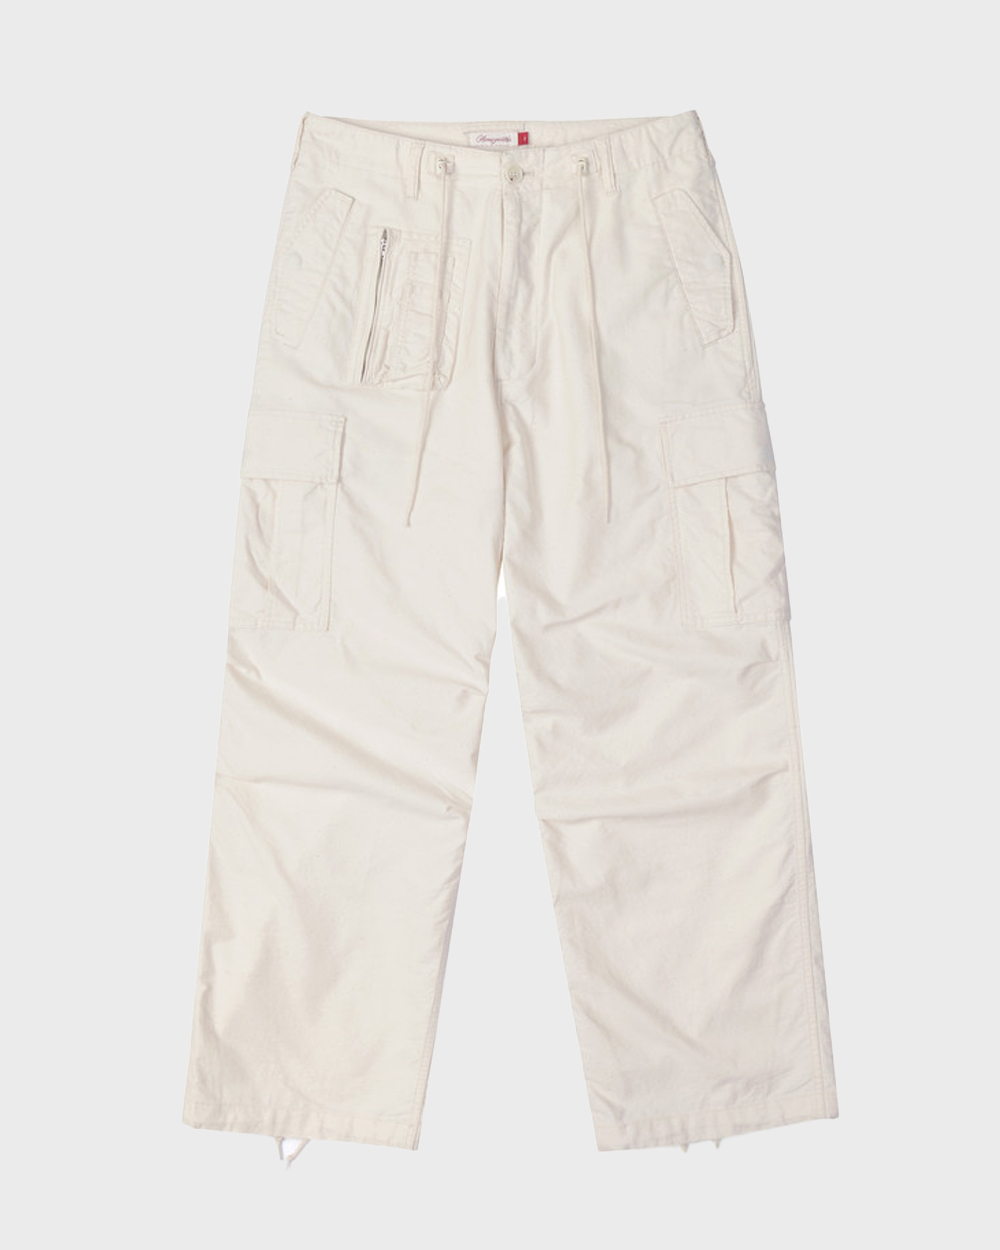 Natural 7 Pocket Cargo Pants (Natural)